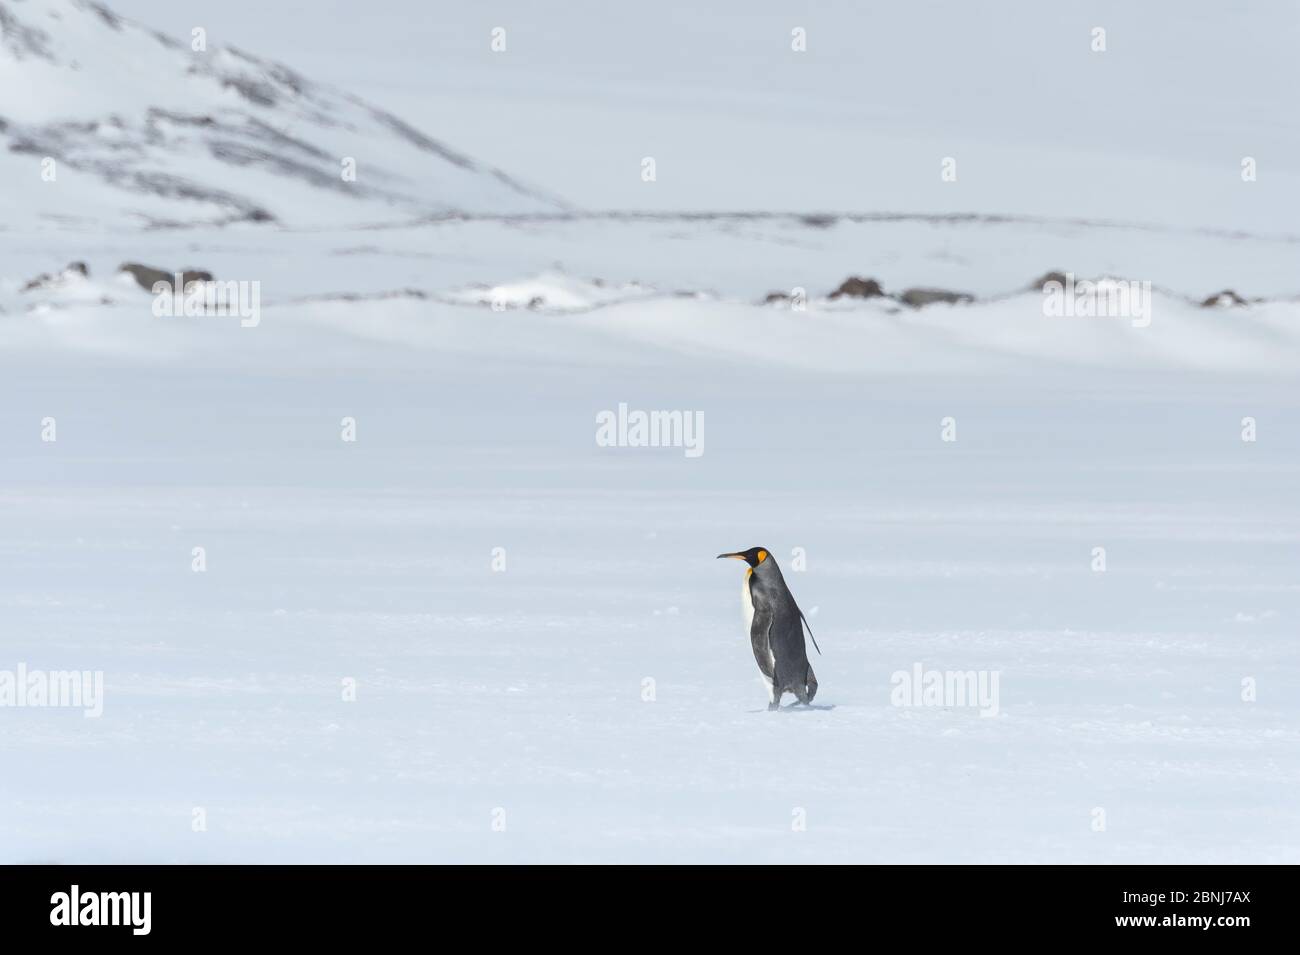 Einsamer Königspinguin (Aptenodytes patagonicus) Wandern auf schneebedeckter Salisbury-Ebene, Südgeorgien, Antarktis, Polarregionen Stockfoto